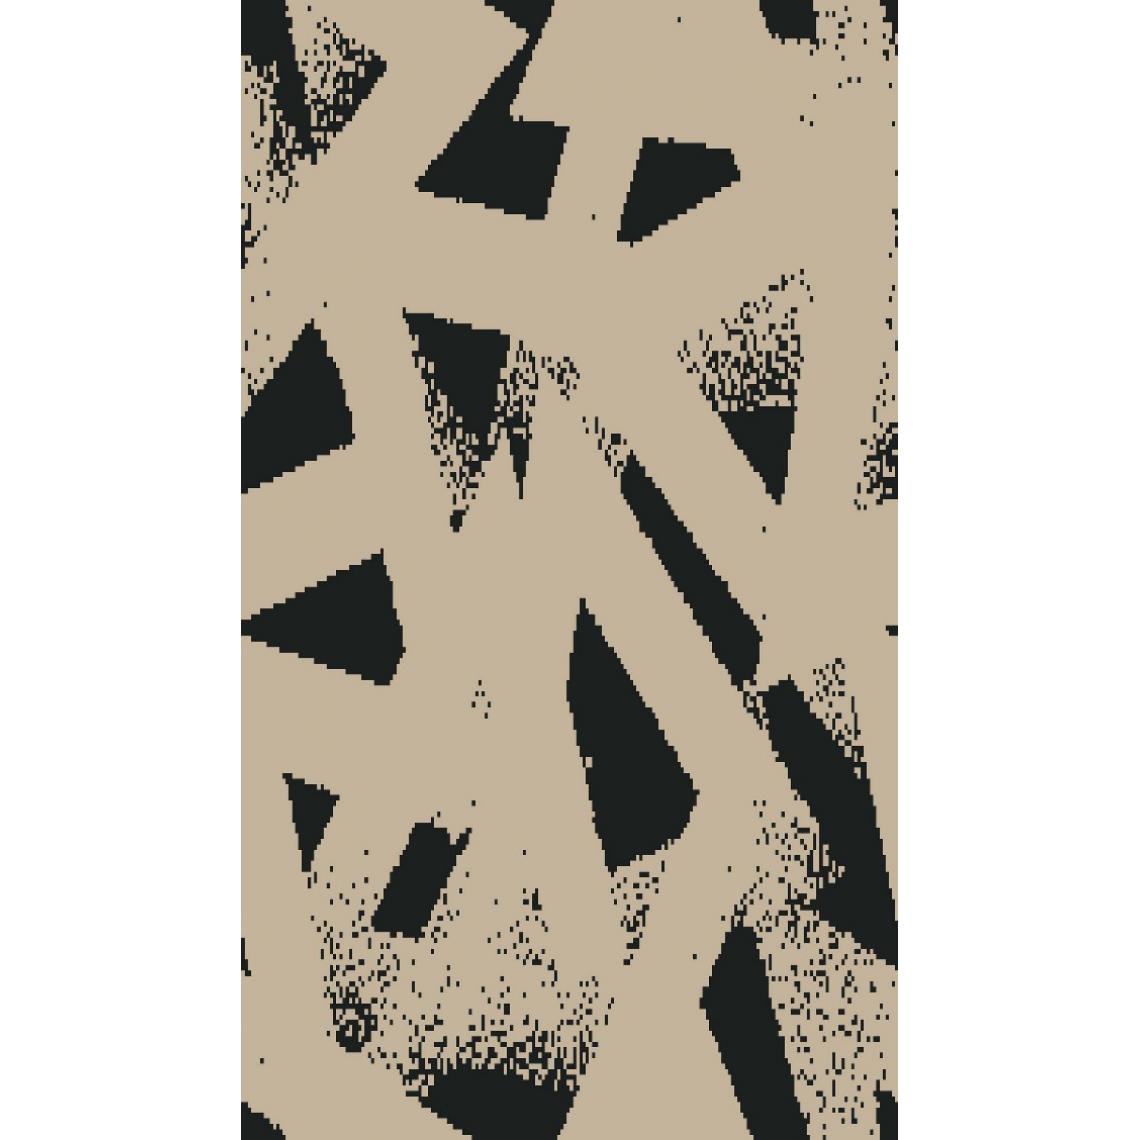 Homemania - HOMEMANIA Tapis Imprimé Geometric Abstract 1 - Géométrique - Décoration de Maison - Antidérapant - Pour Salon, séjour, chambre à coucher - Multicolore en Polyester, Coton, 80 x 150 cm - Tapis